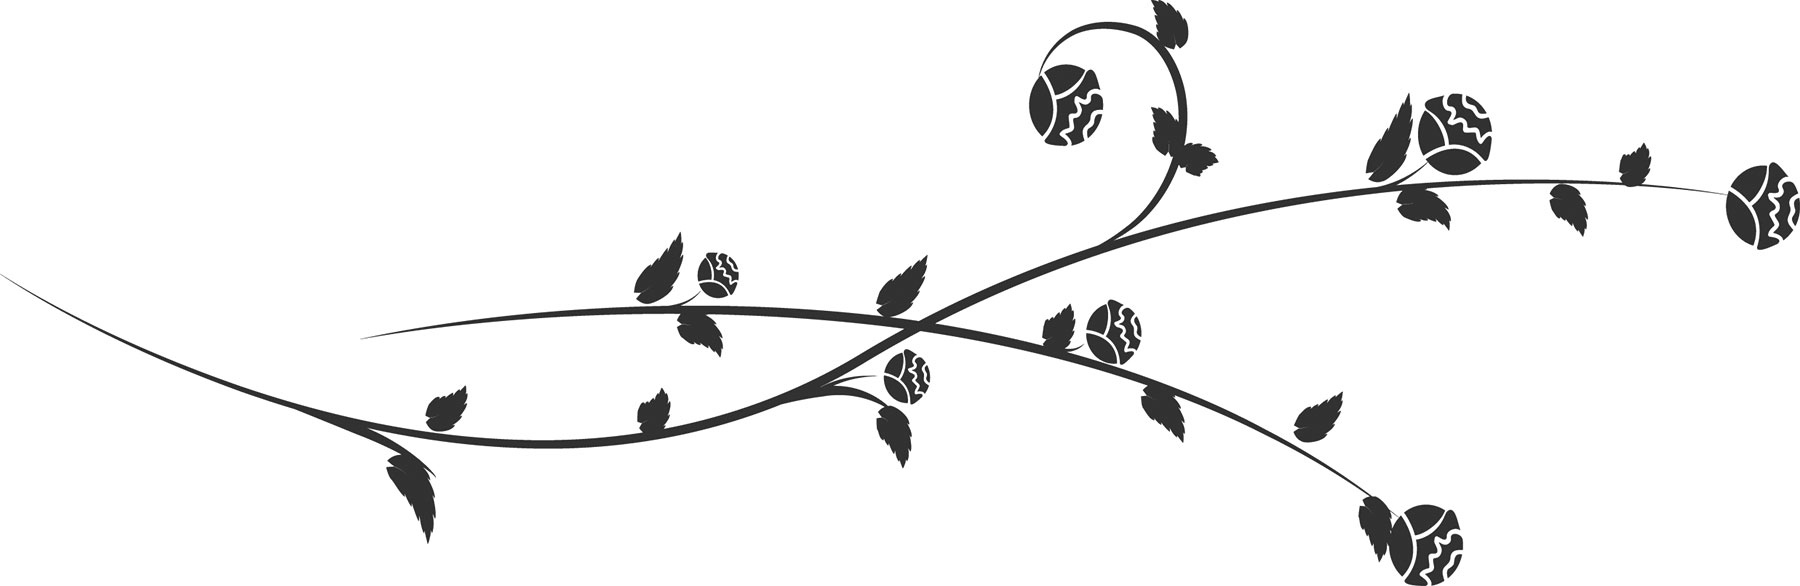 花のイラスト フリー素材 フレーム枠no 294 白黒 茎葉 曲線